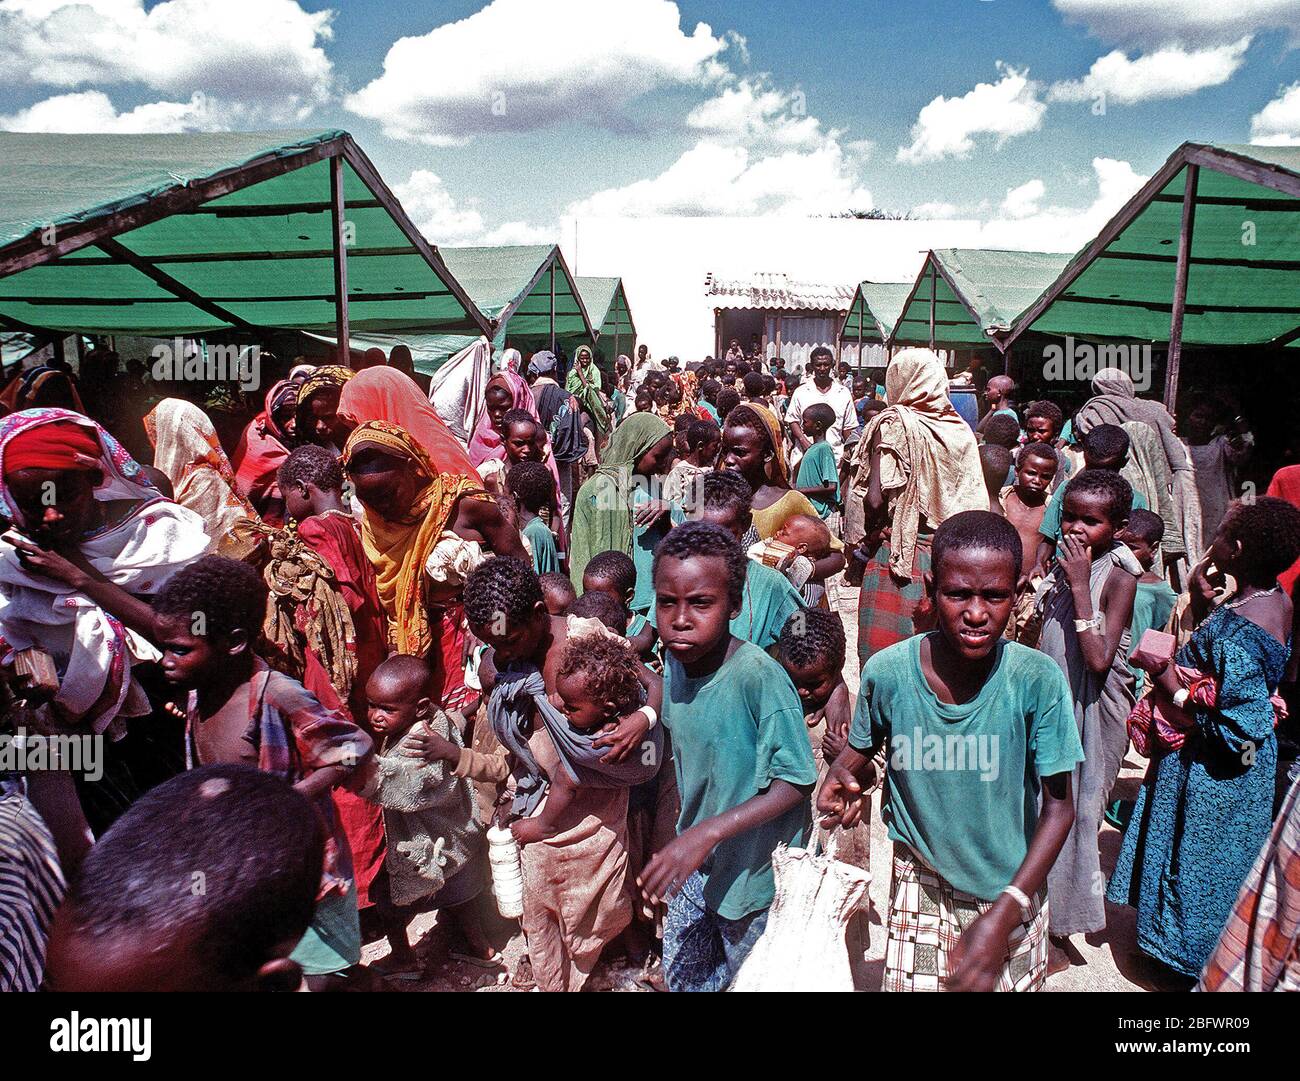 1993 - Los somalíes se reúnen en el centro de alimentación de preocupación durante el esfuerzo de socorro multinacional operación RESTAURAR LA ESPERANZA. El centro es operado por el Irish Relief Organisation preocupación. Foto de stock